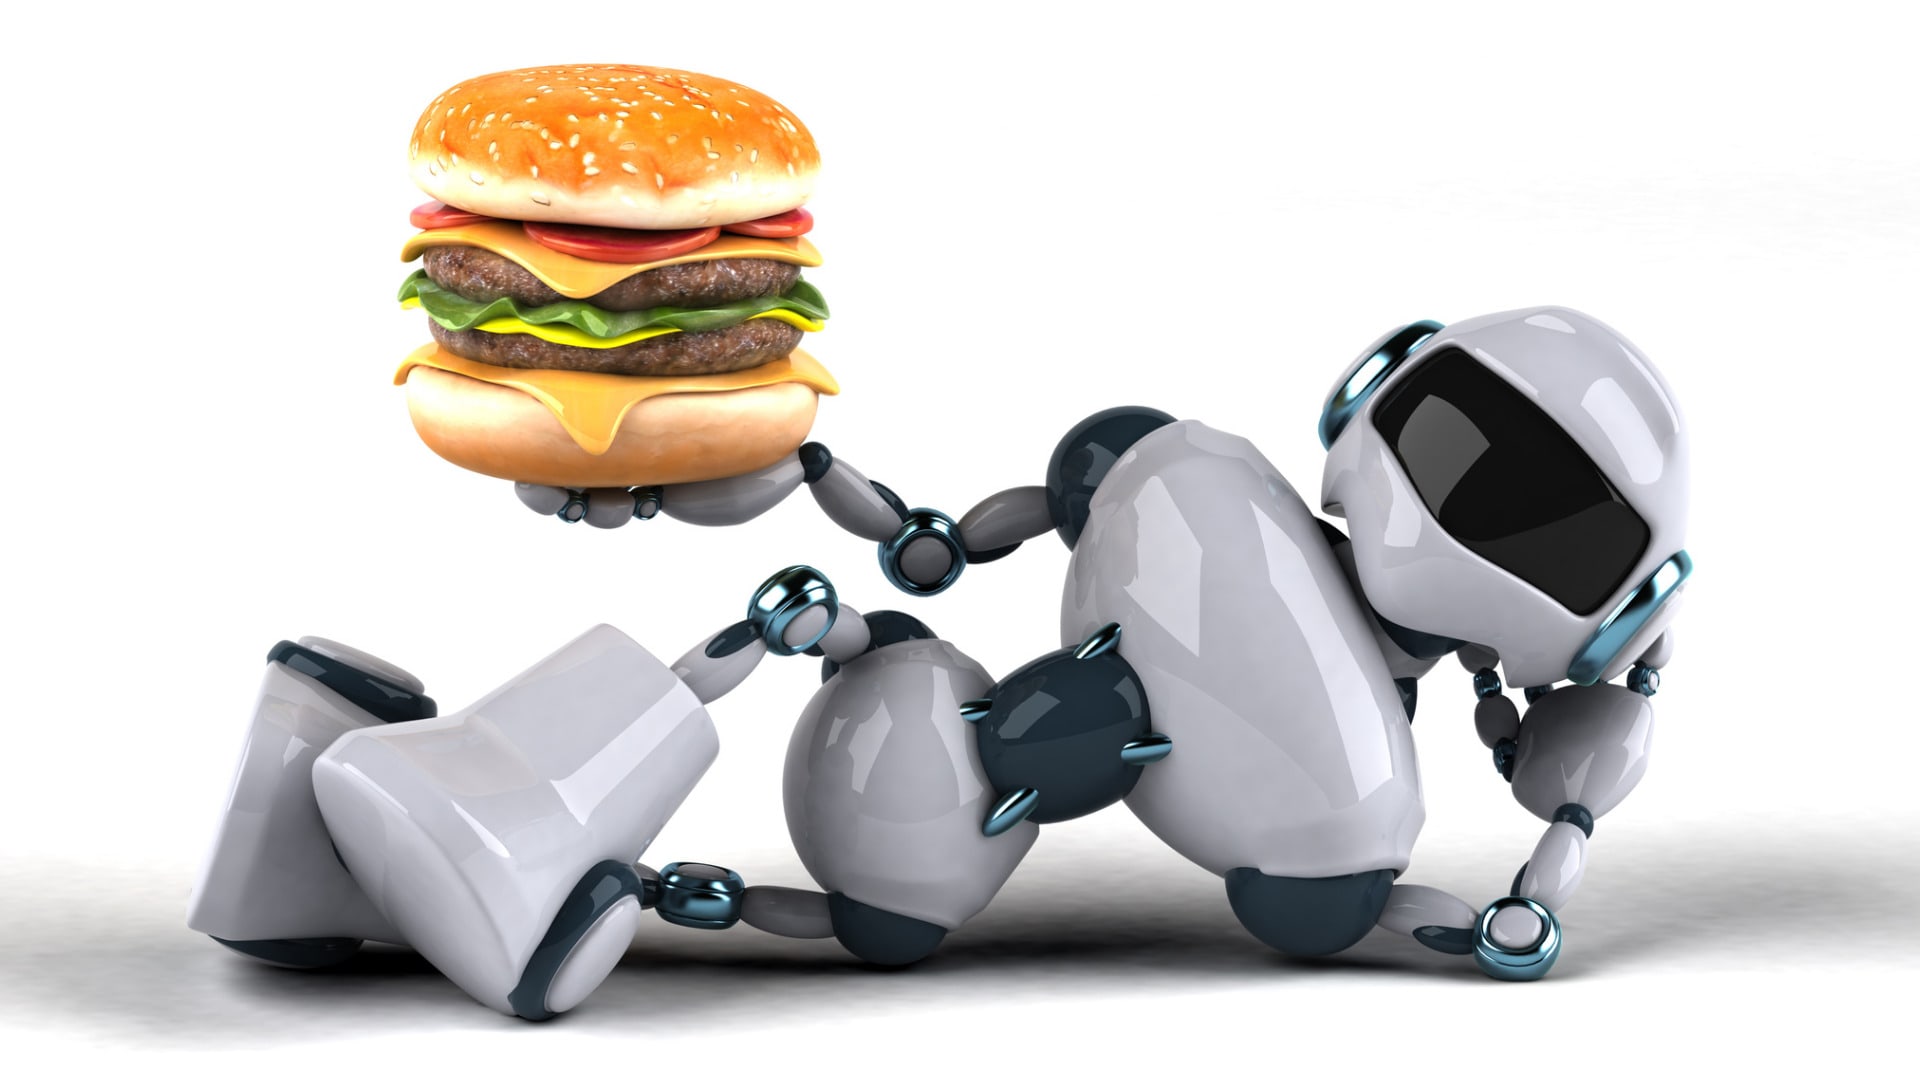 Dali byste si burger, který nepřipravil člověk, ale robot?